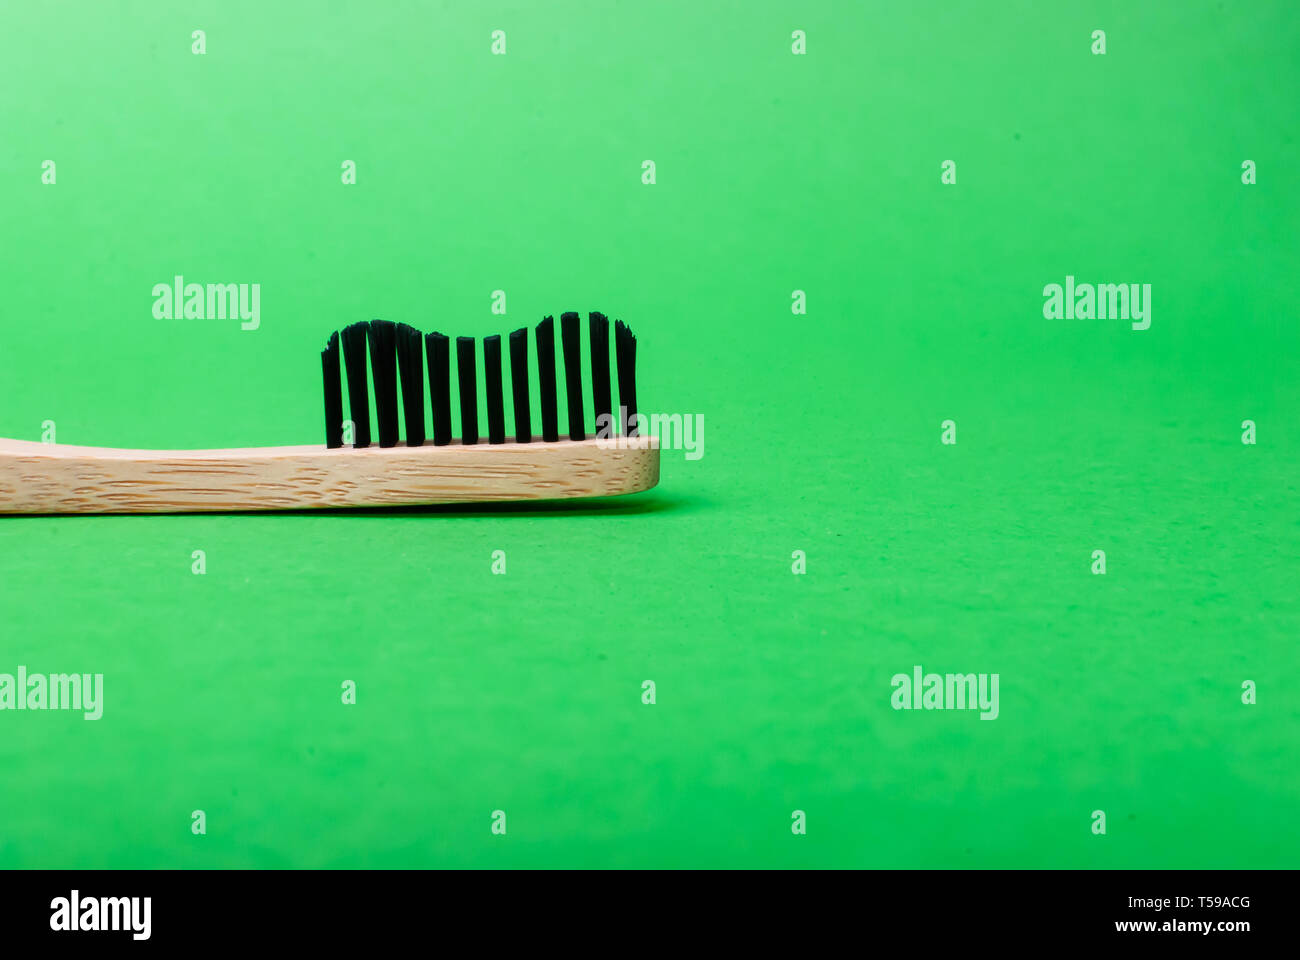 Close up Vue de côté de la tête d'une brosse à dents en bambou sur fond vert with copy space Banque D'Images